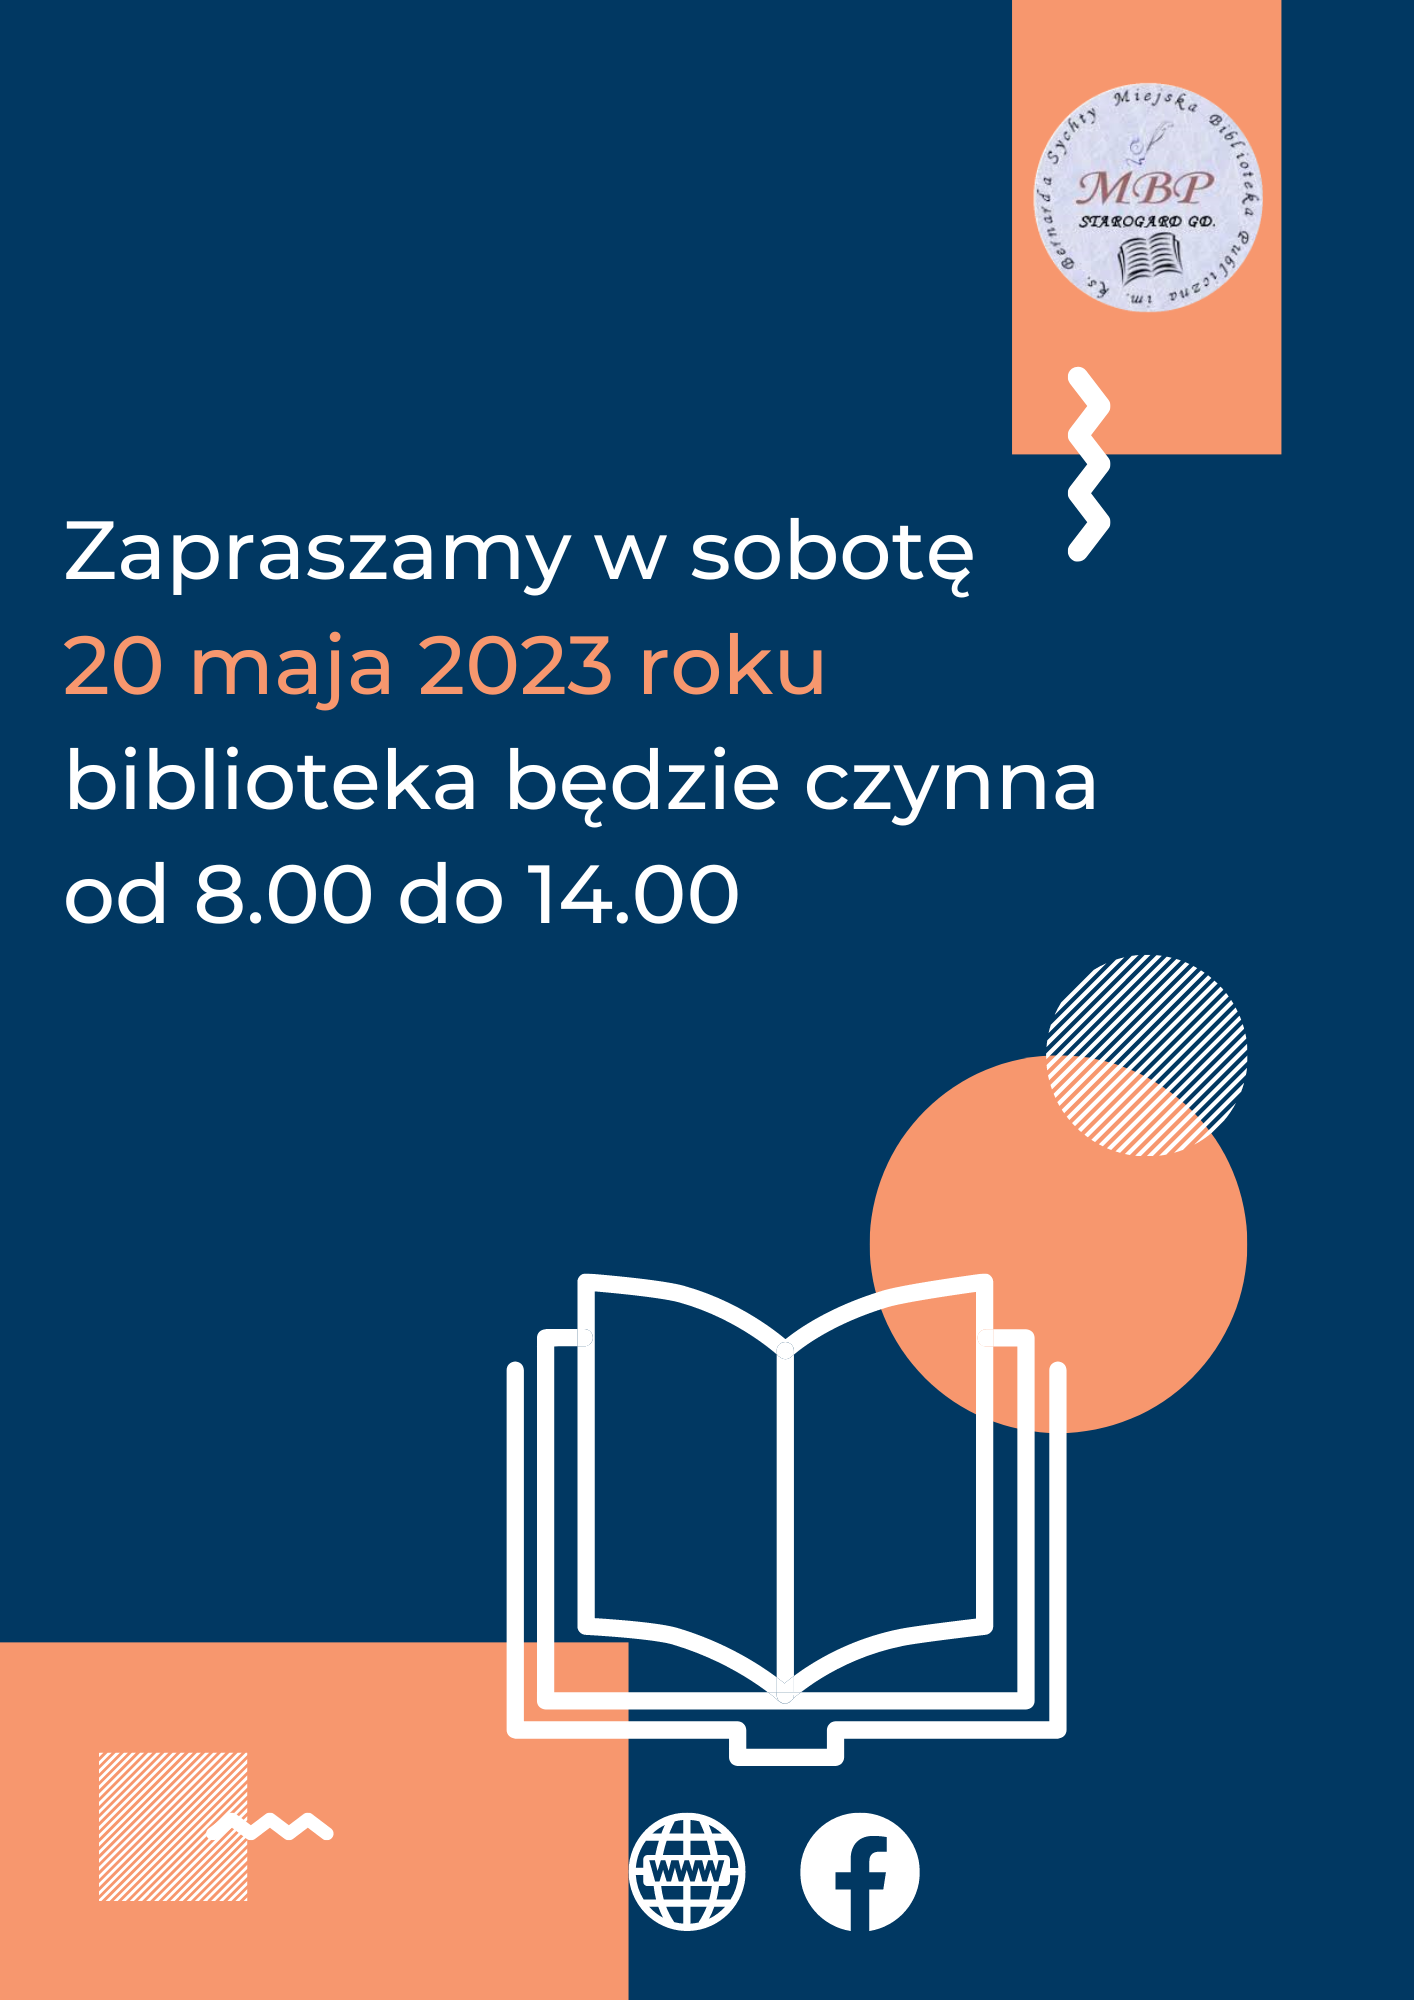 Plakat informujący o pracującej sobocie 20 maja 2023 roku biblioteka będzie czynna od 8.00 do 14.00. Miejska Biblioteka Publiczna w Starogardzie Gdańskim.